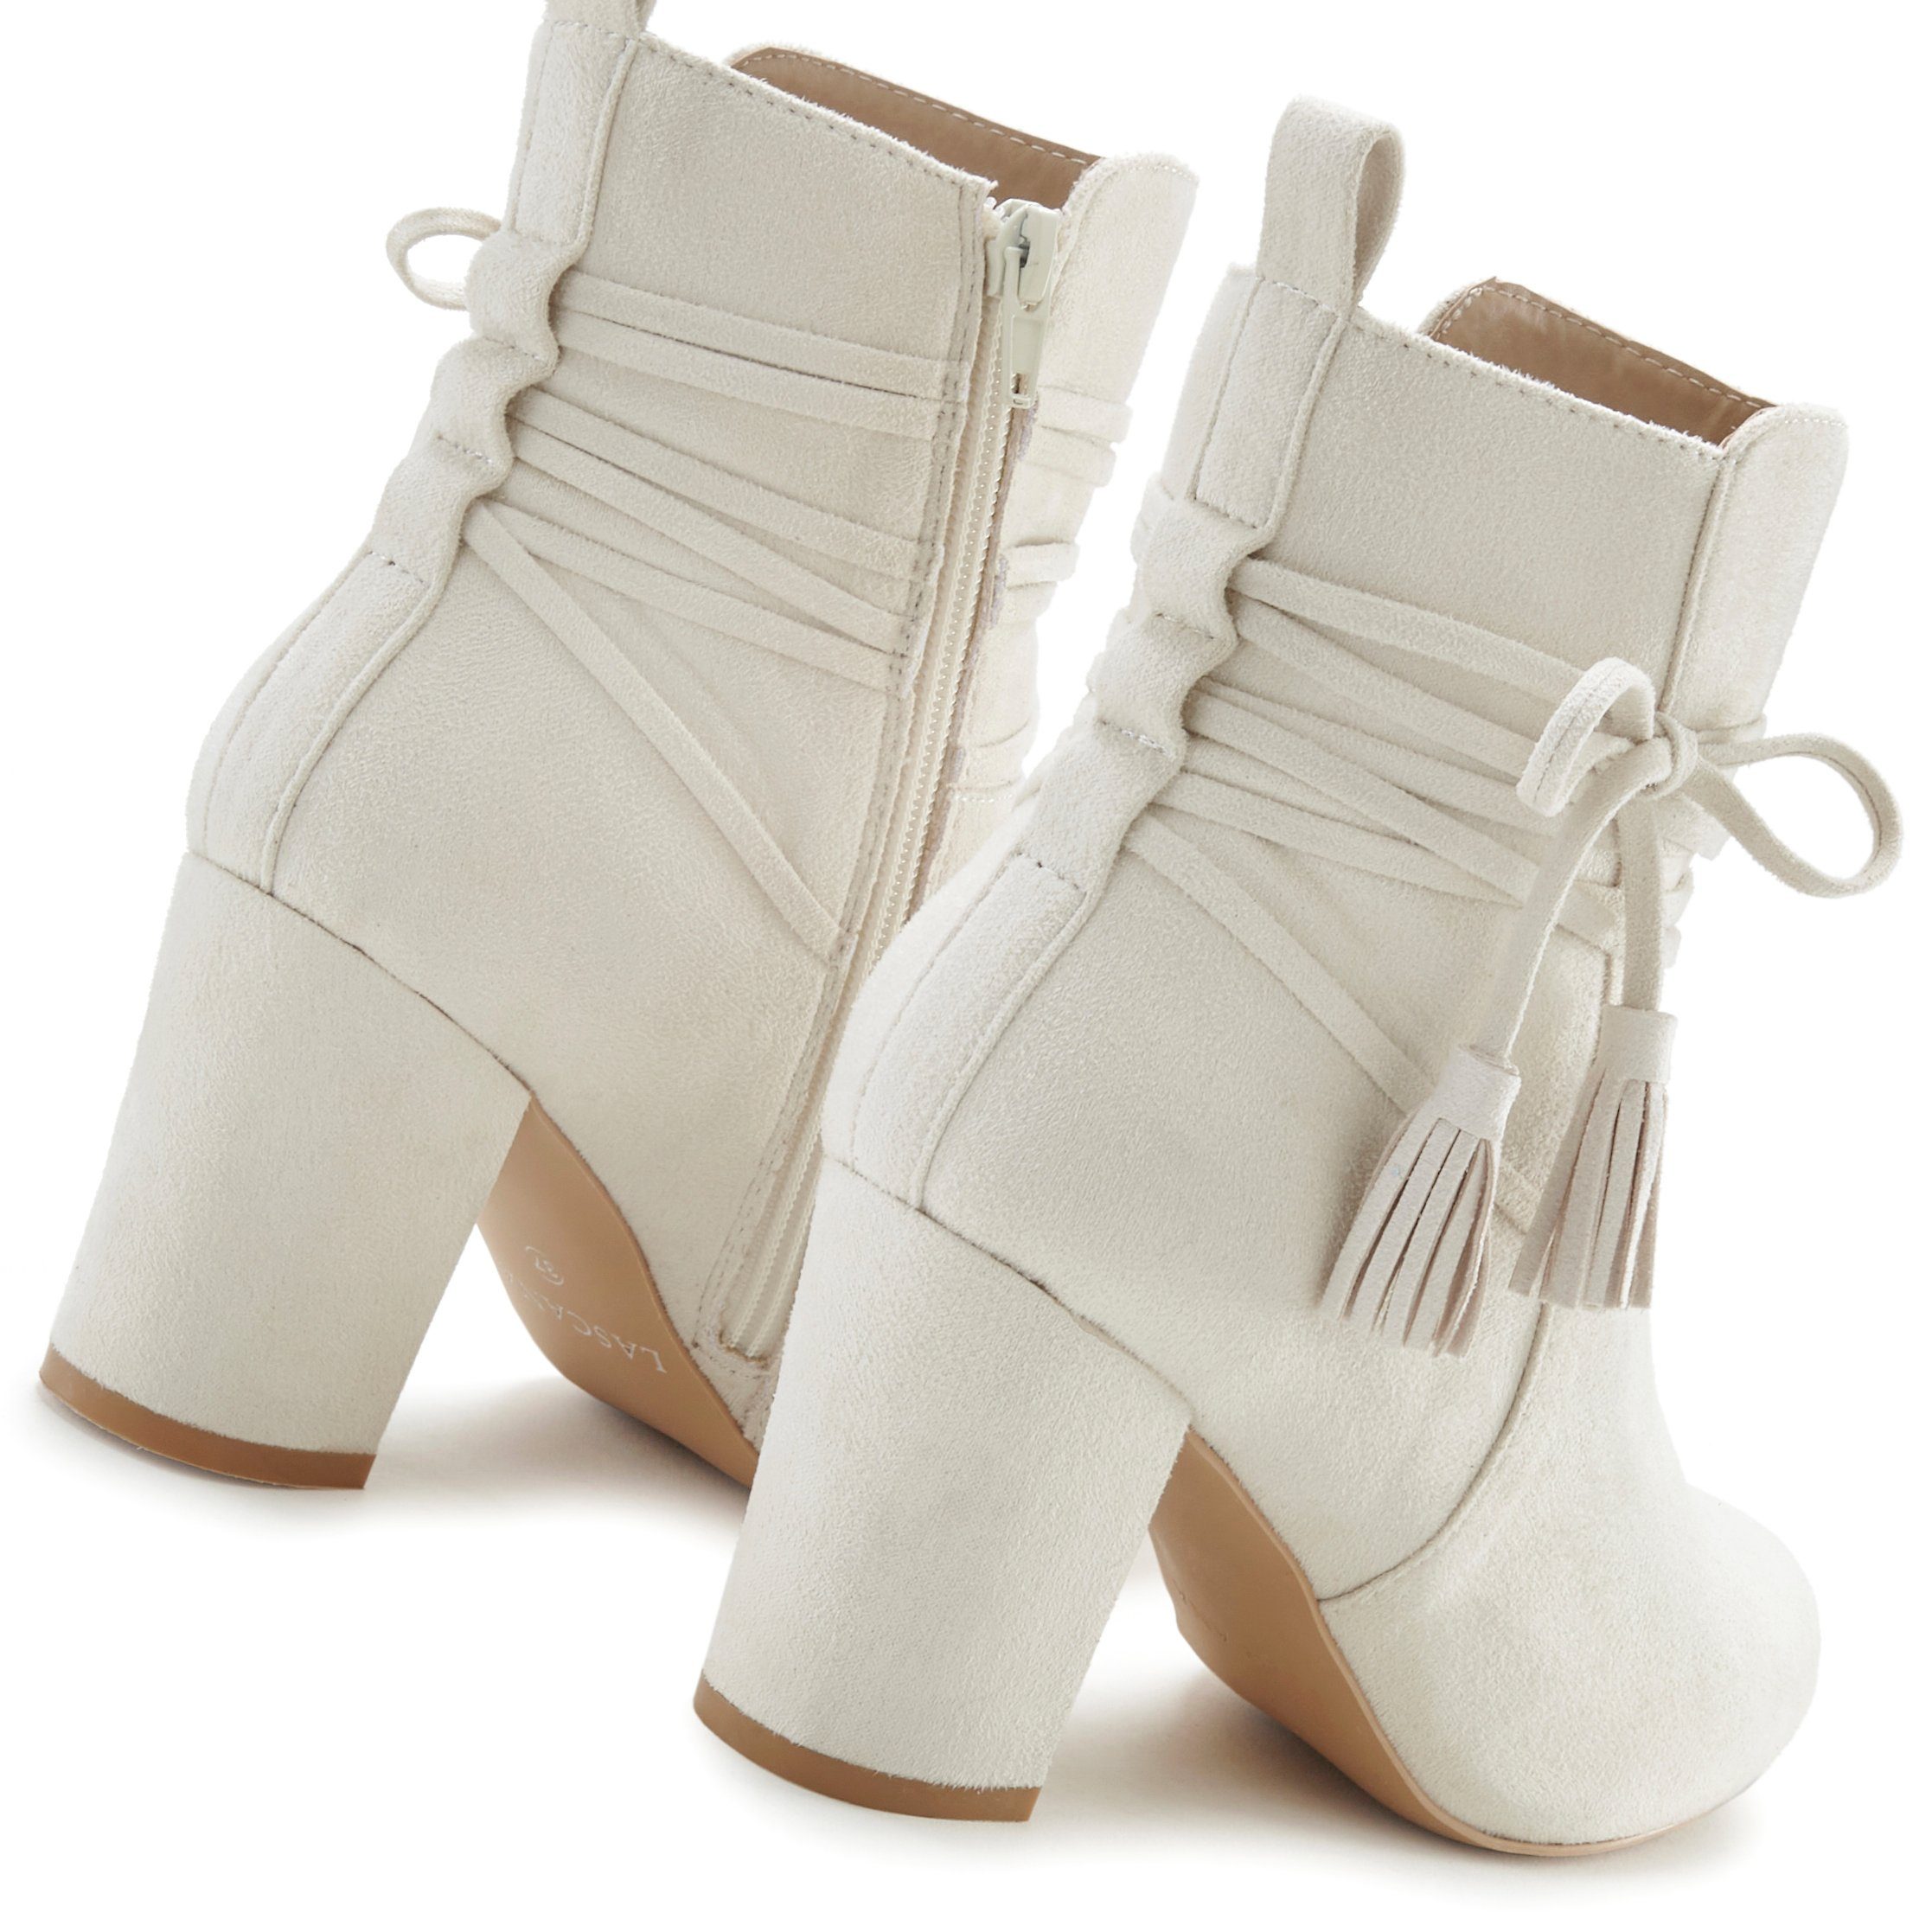 High-Heel-Stiefelette, Stiefelette beige LASCANA Boots, Stiefel Blockabsatz, Ankle mit